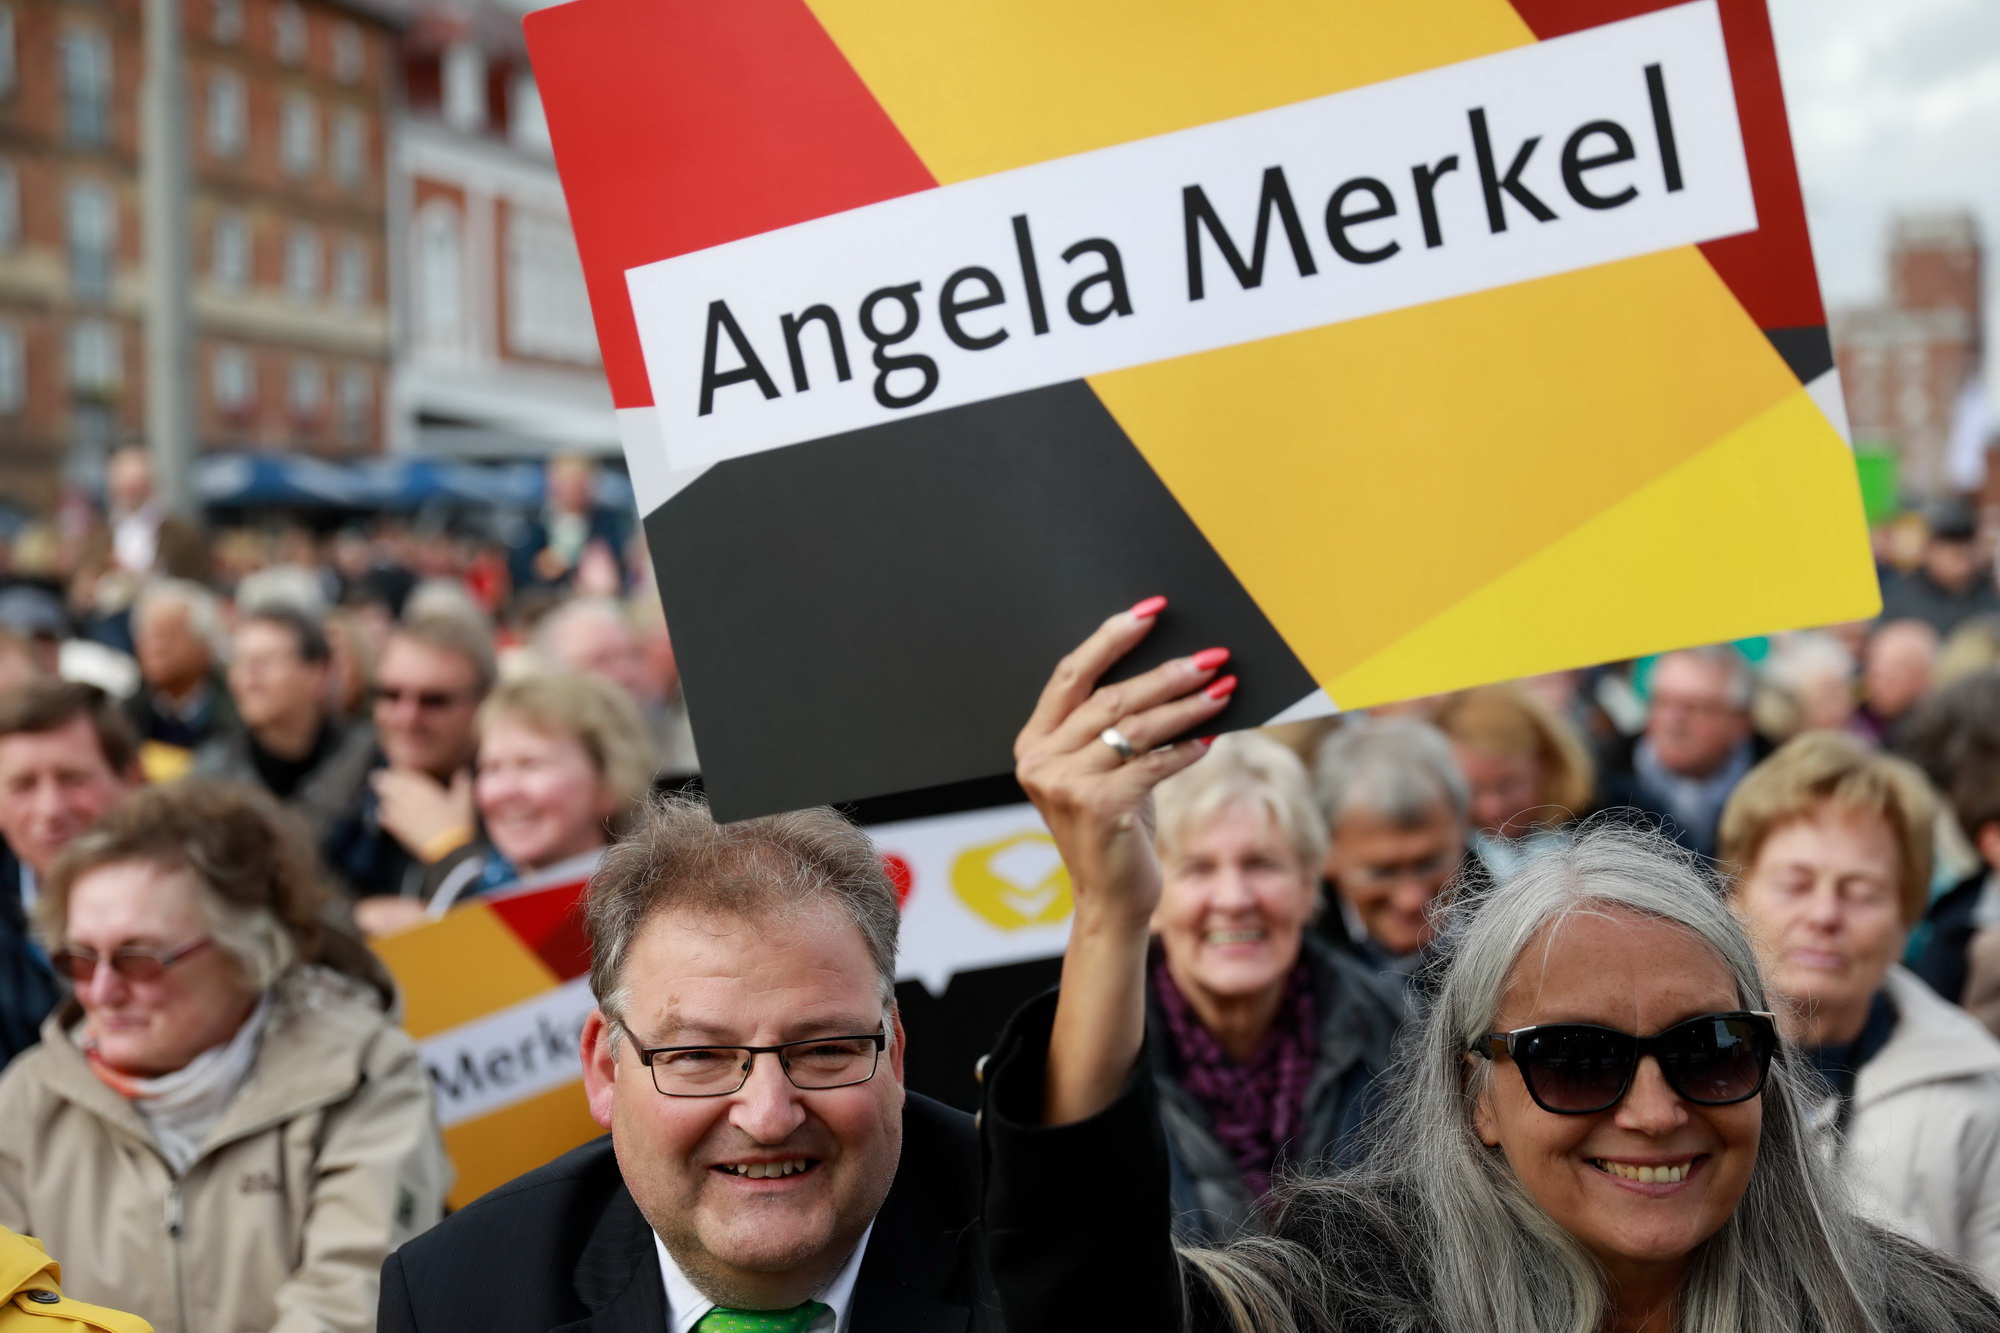  Những người ủng hộ Thủ tướng Angela Merkel tại cuộc vận động tranh cử của đương kim Thủ tướng ở Kappeln, miền bắc Đức ngày 20/9. AFP/ TTXVN